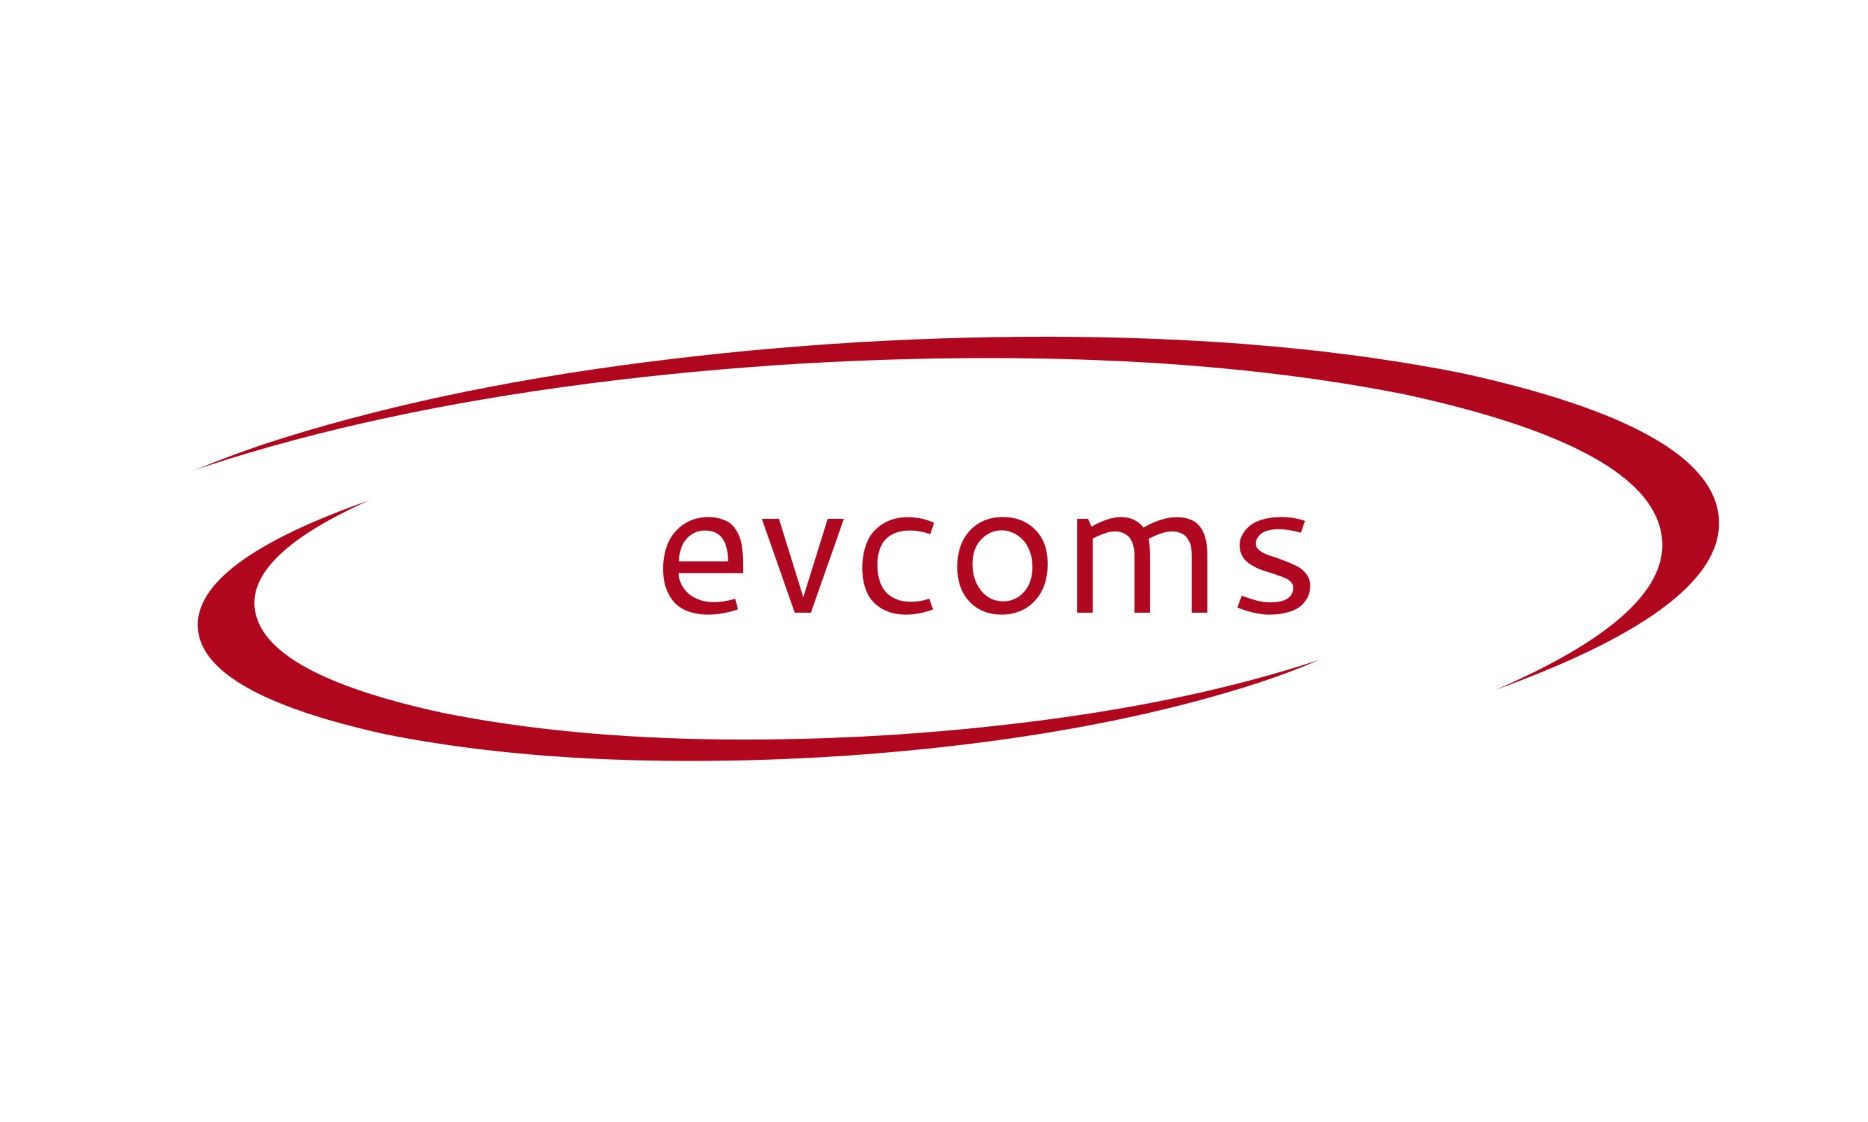 evcoms